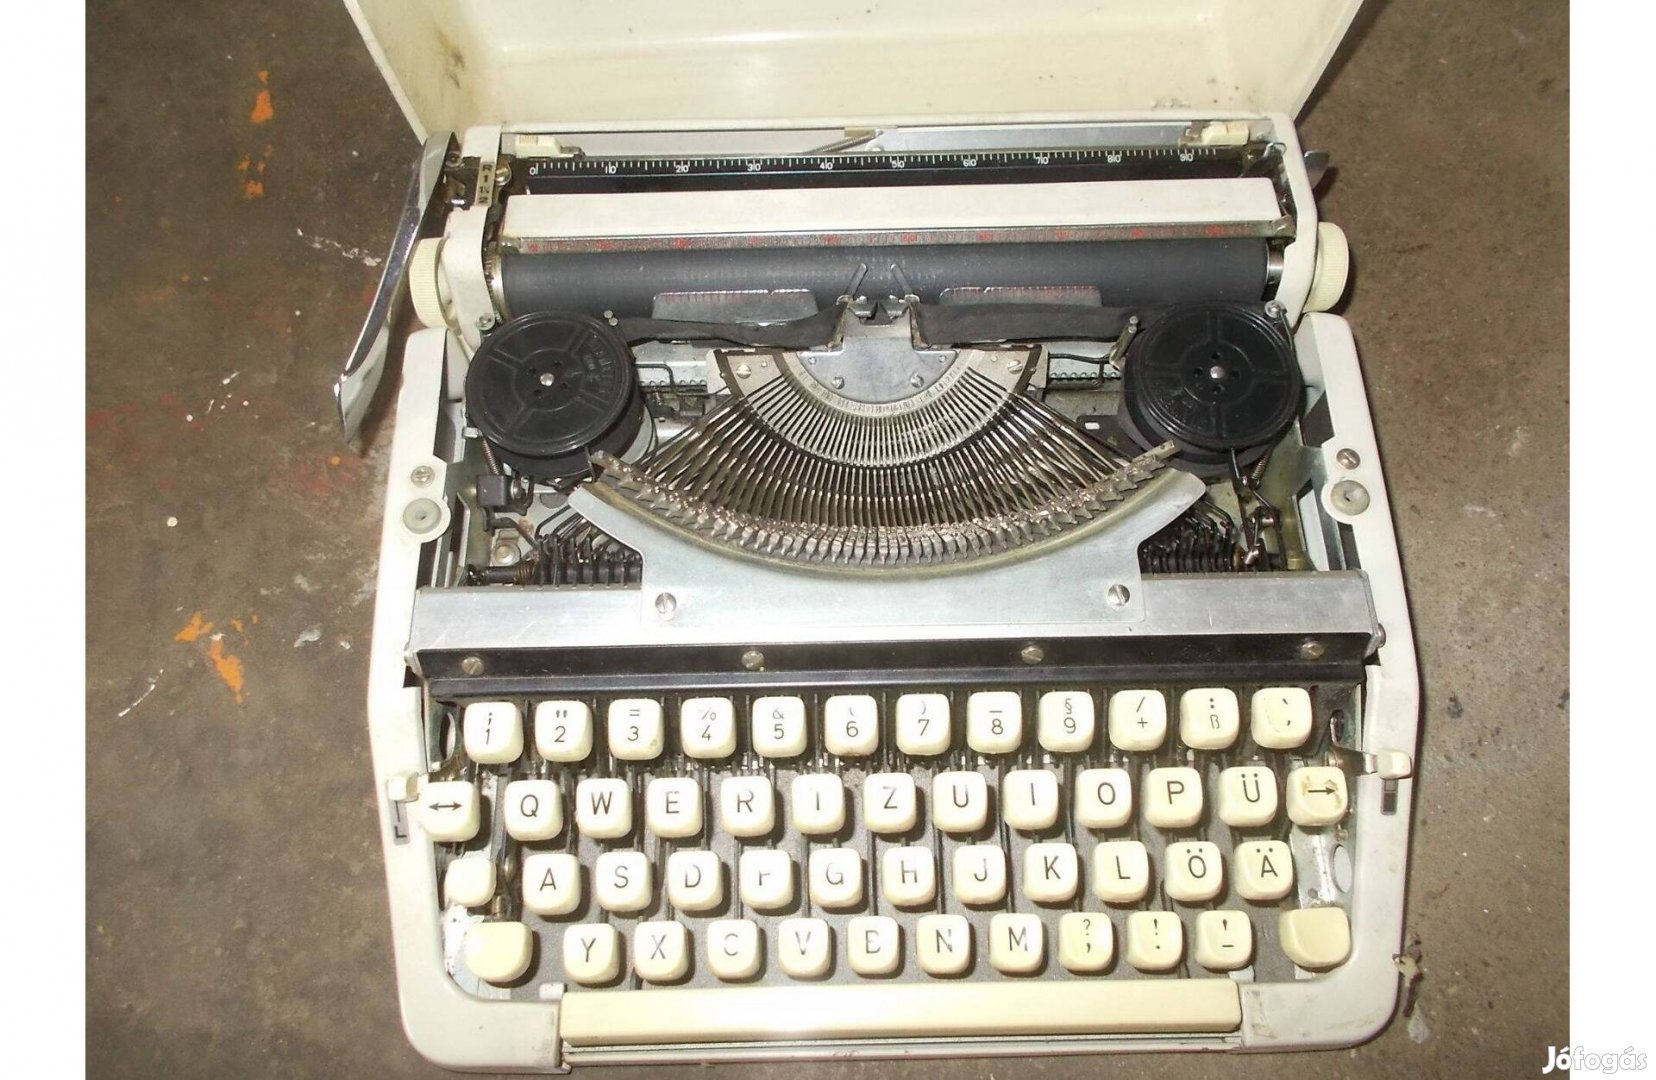 Eladó a képen látható régi táska írógép fellelt állapotban